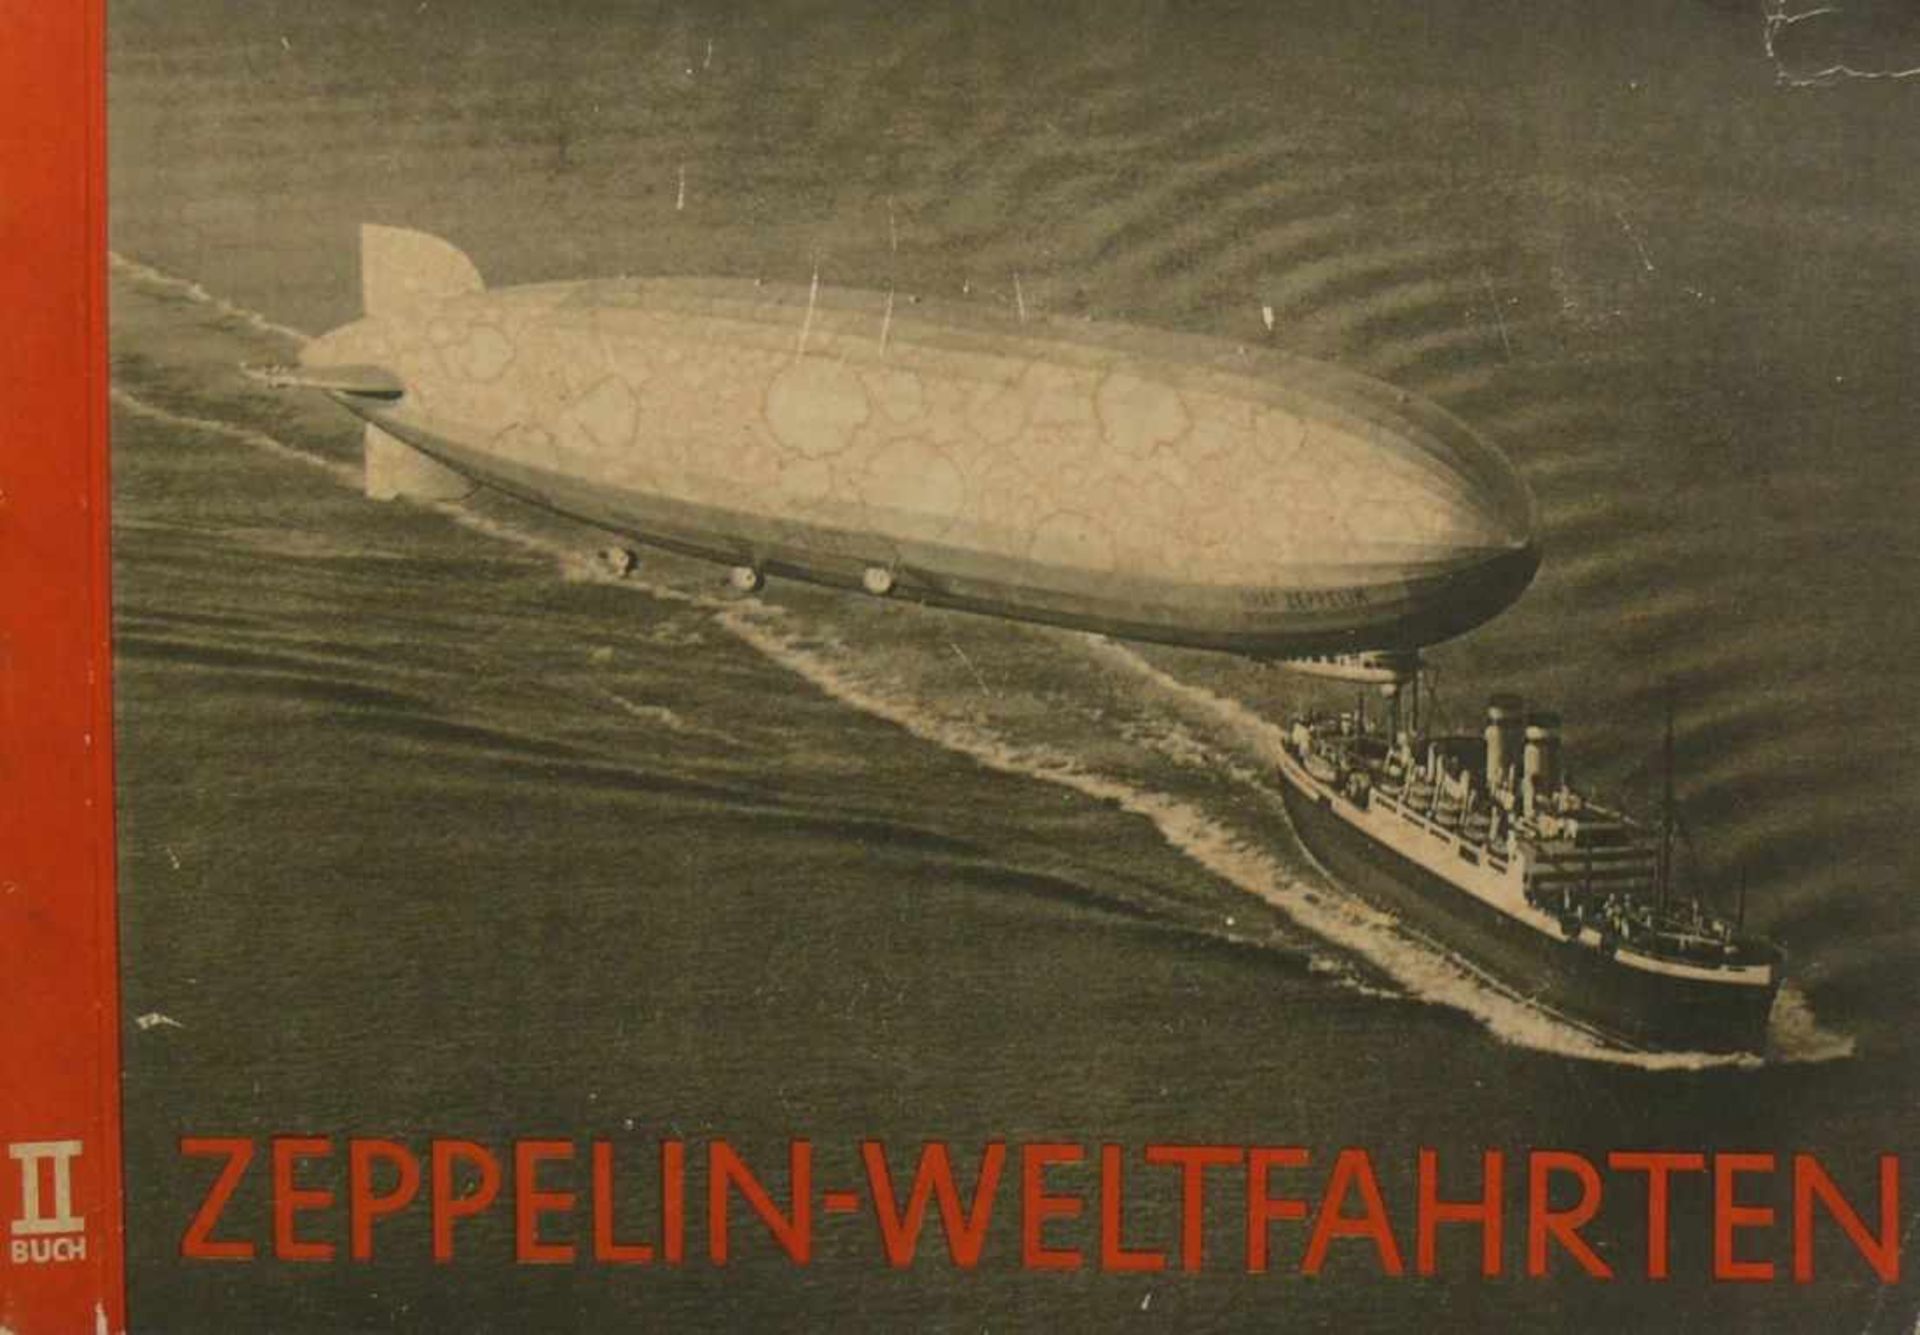 ZEPPELIN-WeltfahrtenII. Buch; mit 155 Fotos (Foto Nr. 116 fehlt)